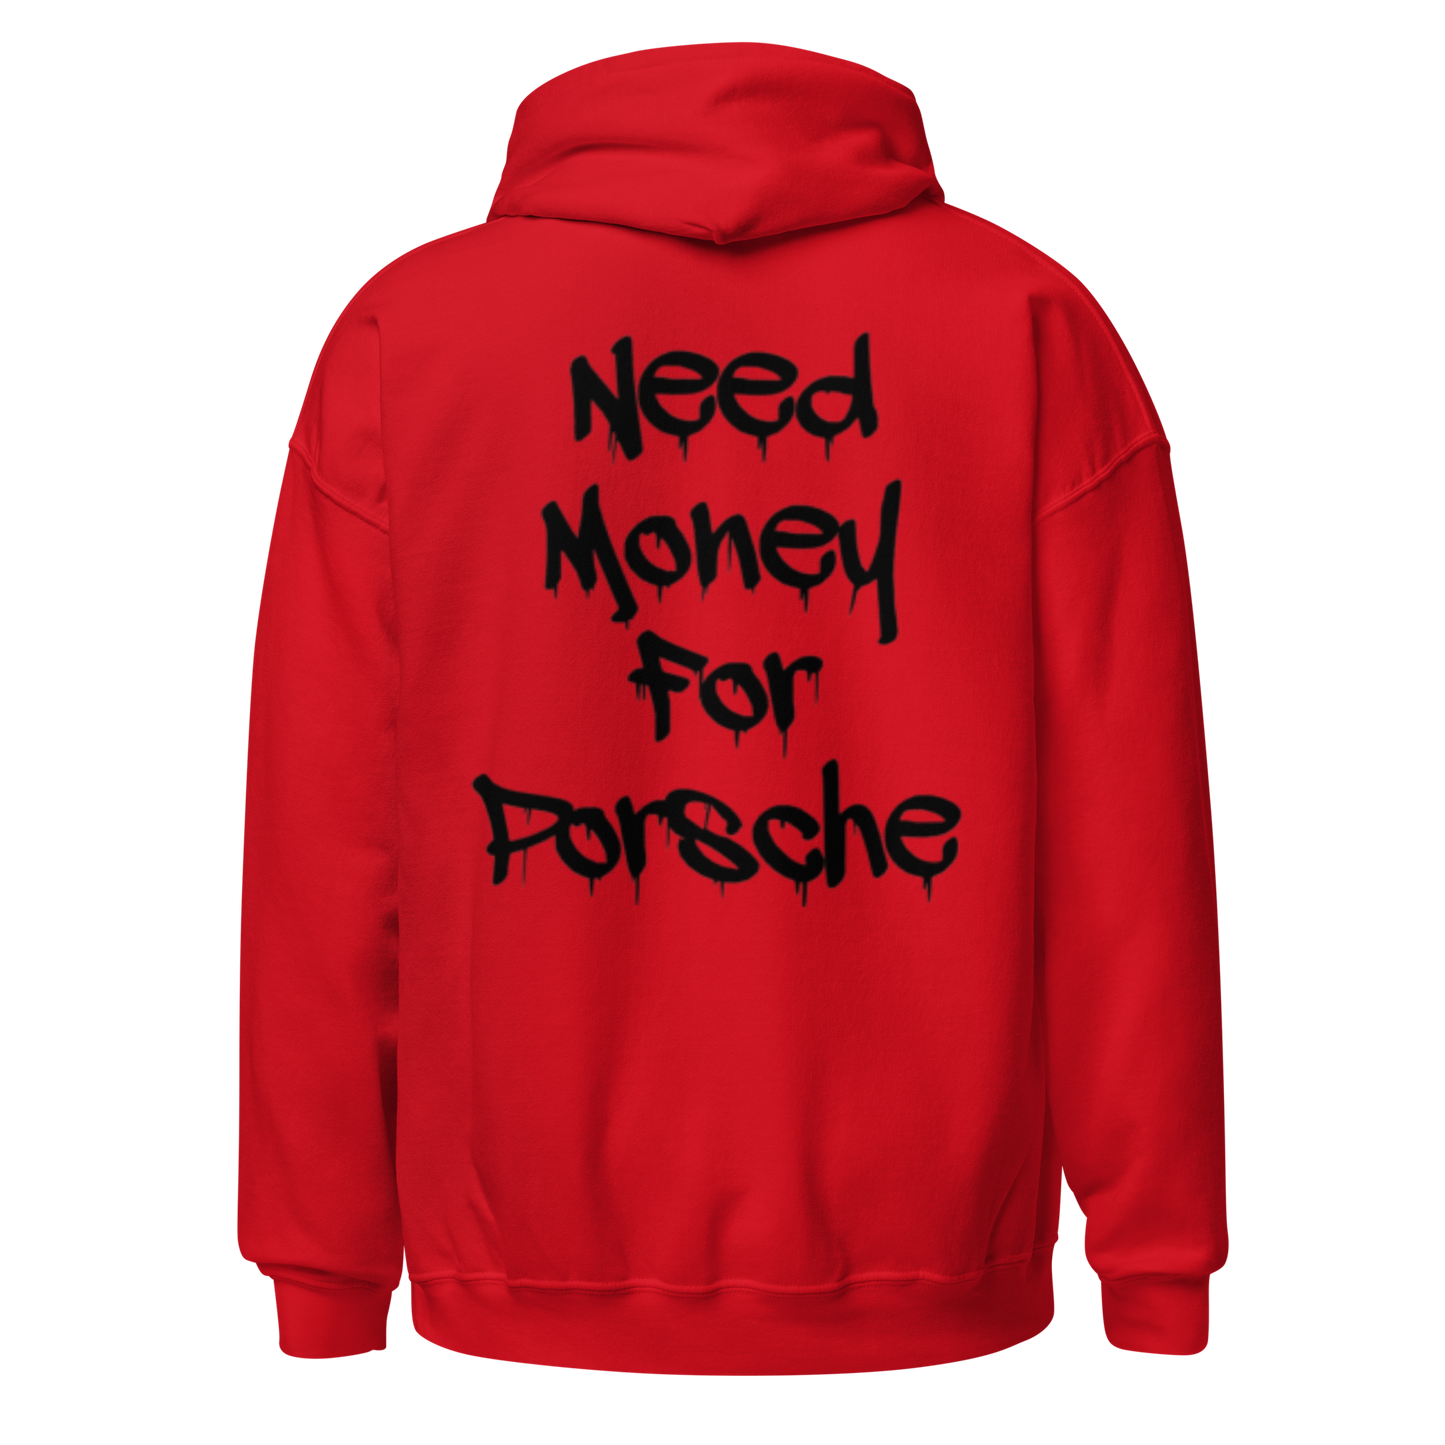 FELPA NEED MONEY FOR PORSCHE